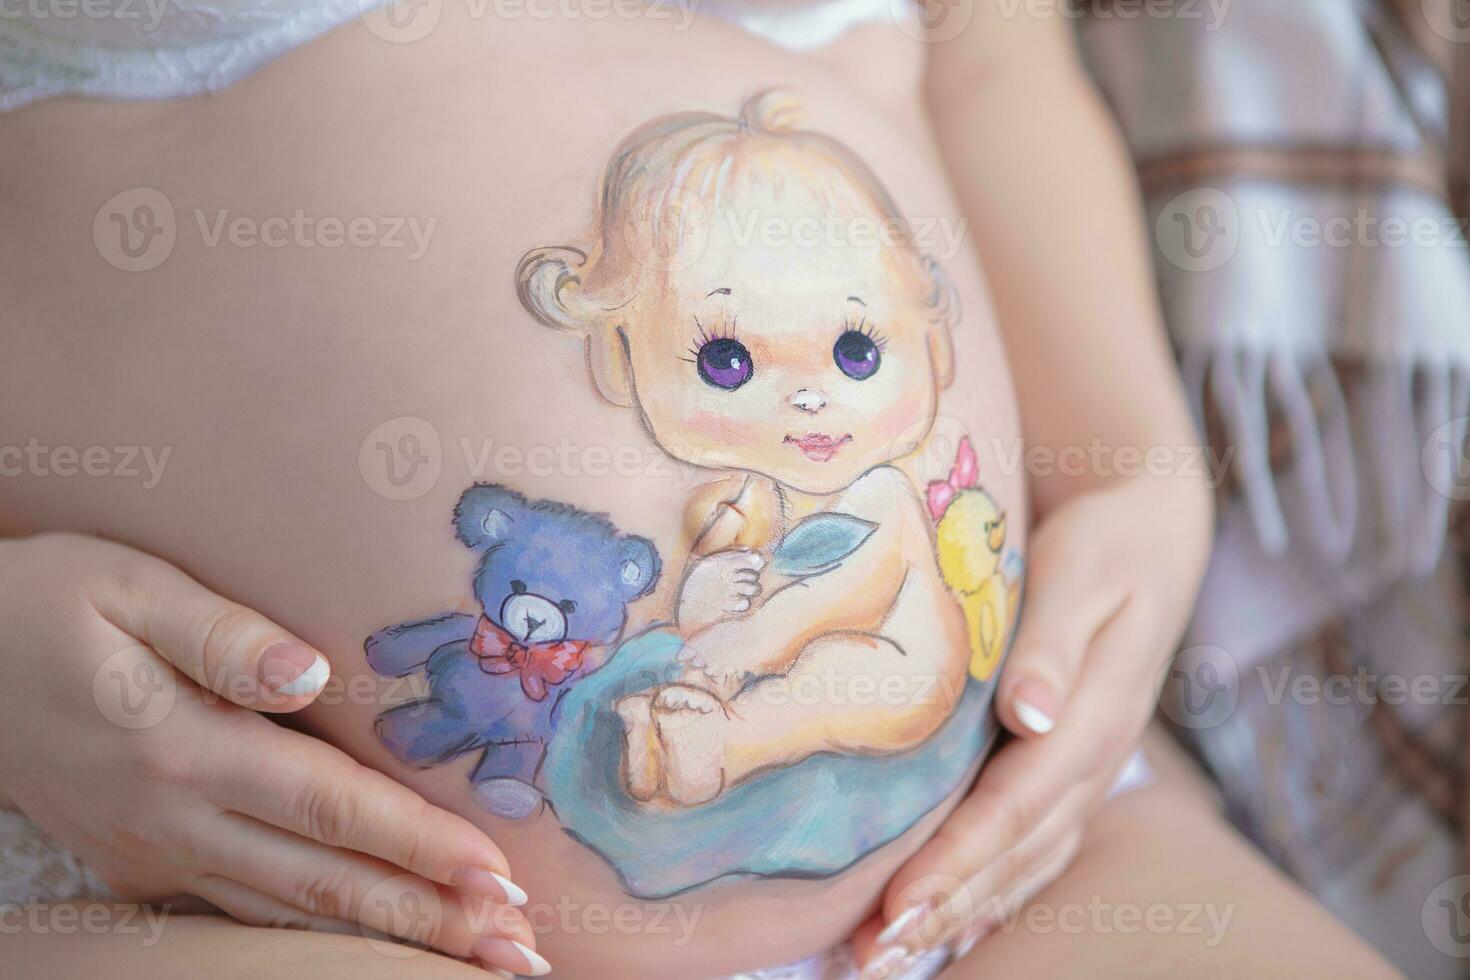 ziemlich Zeichnung auf das Bauch von ein schwanger Frau foto